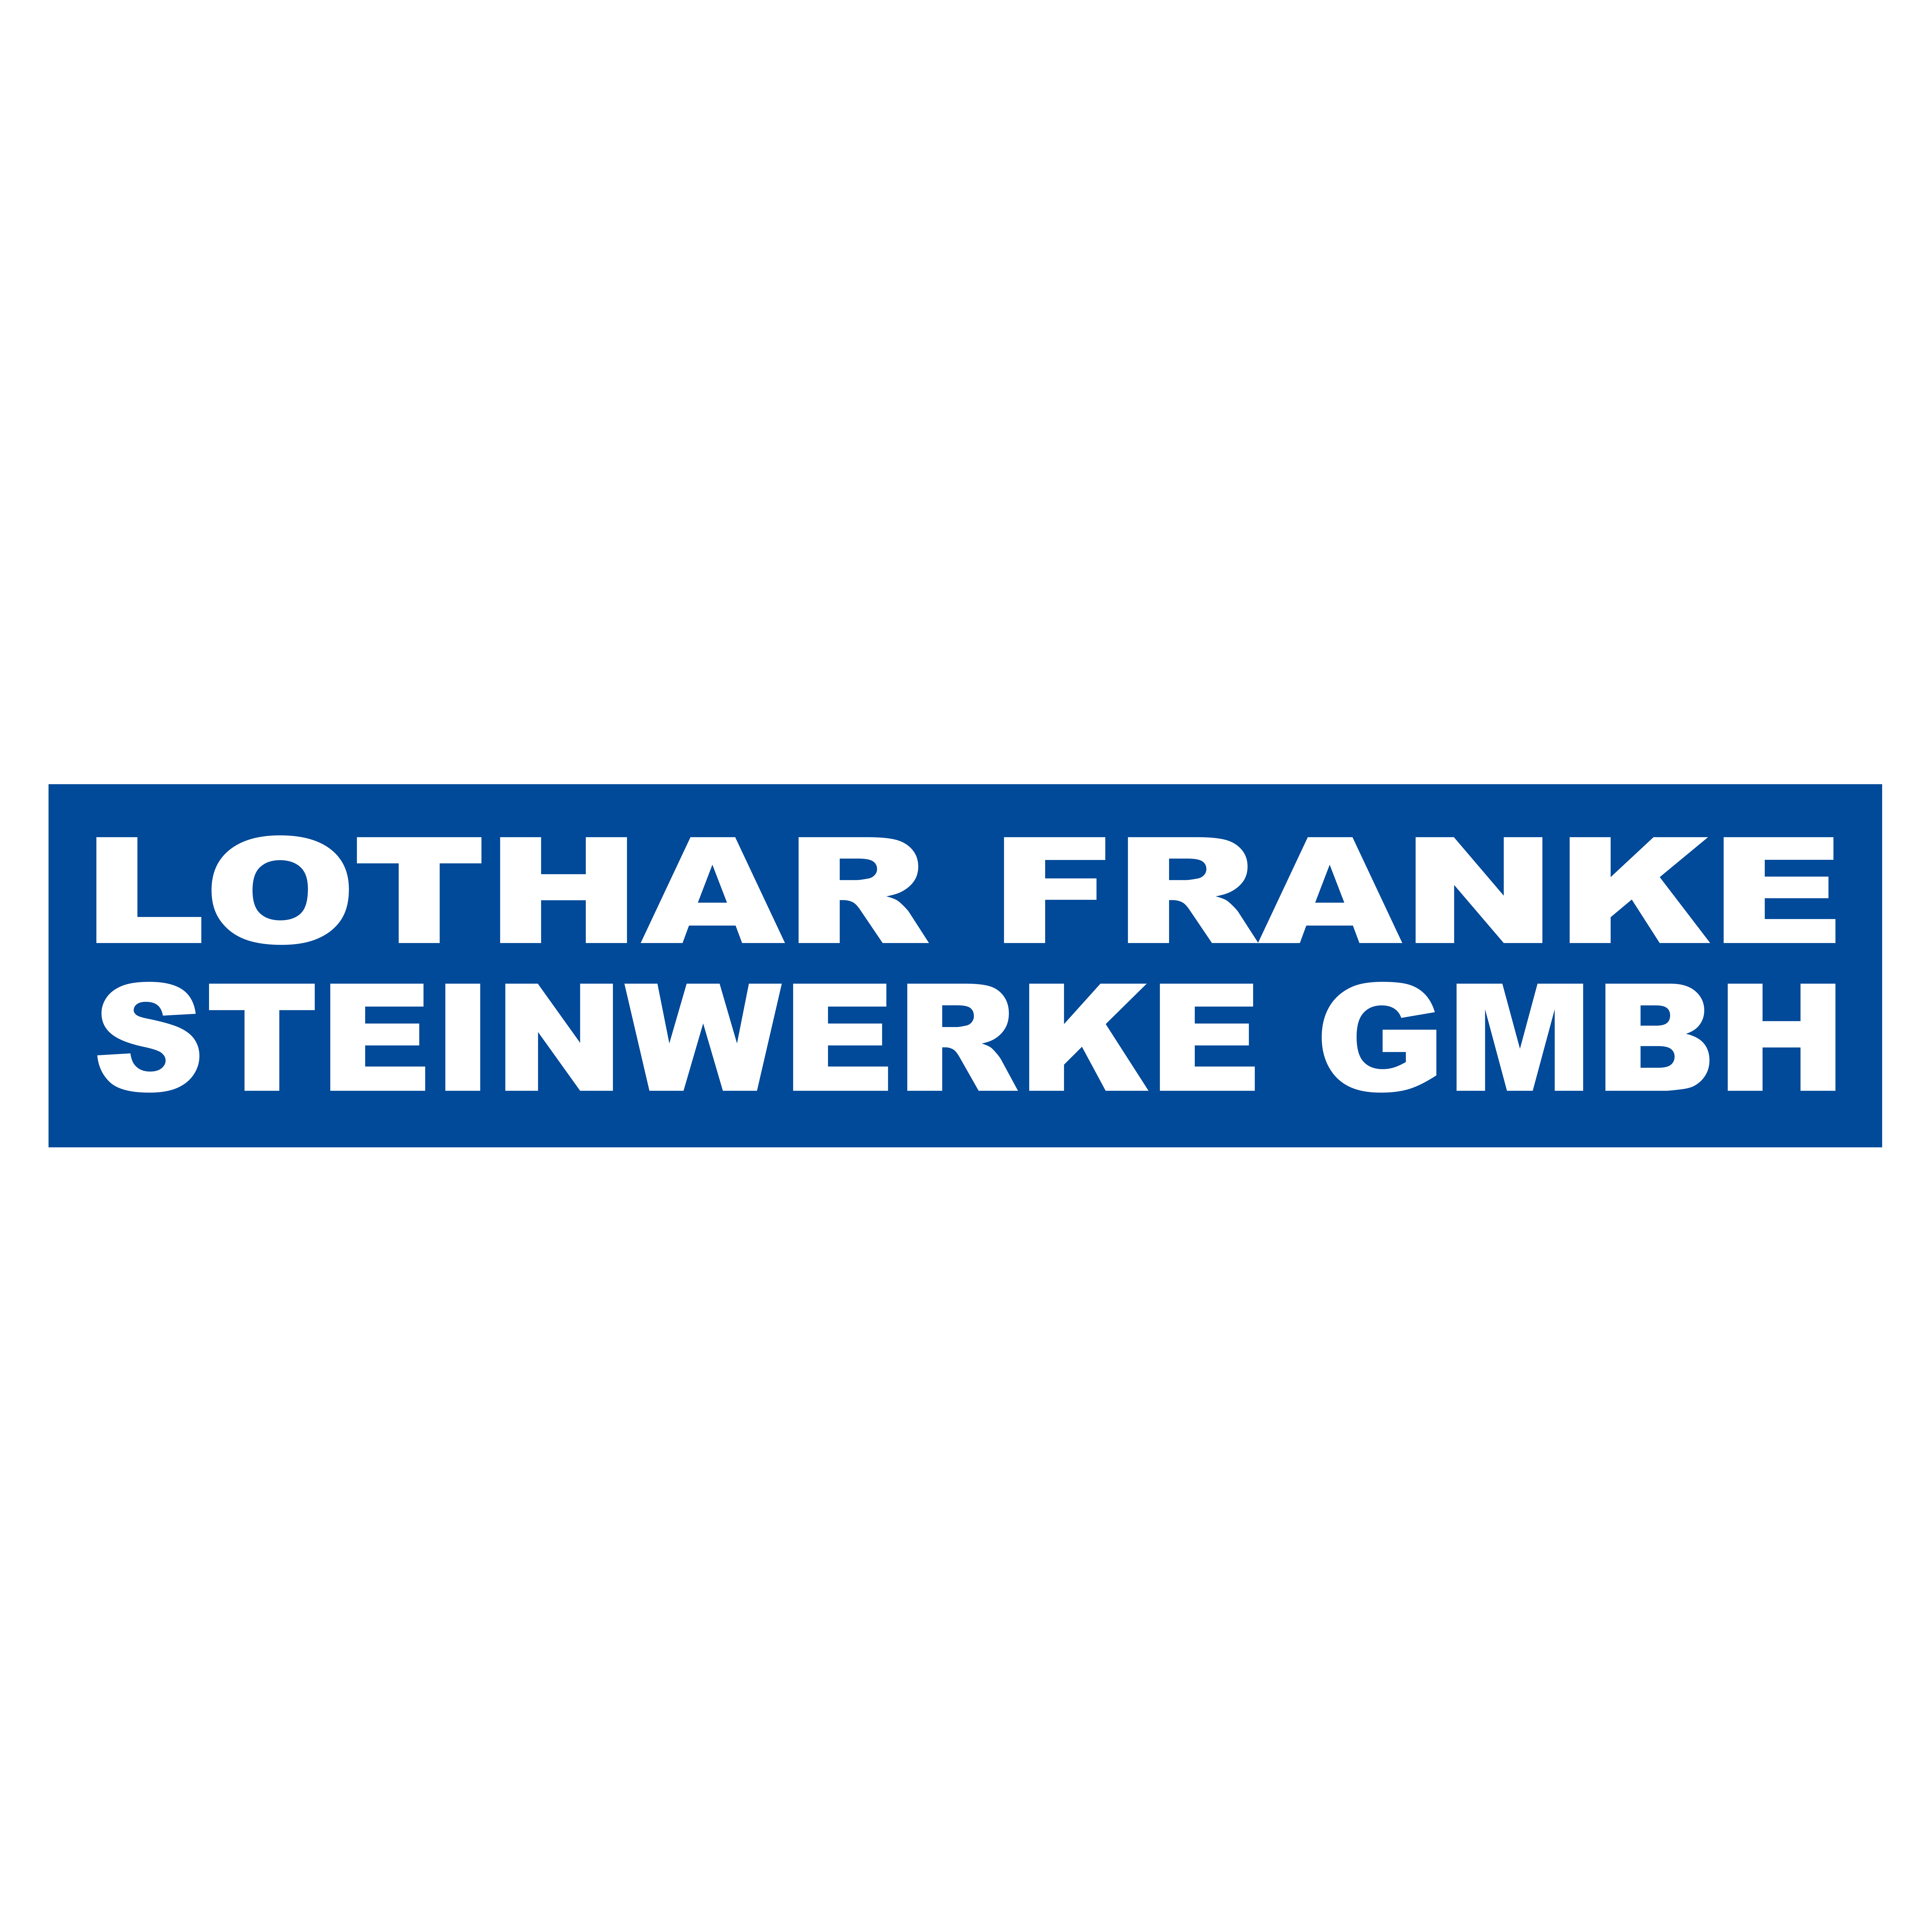 Lothar Franke Steinwerke GmbH in Nürnberg - Logo